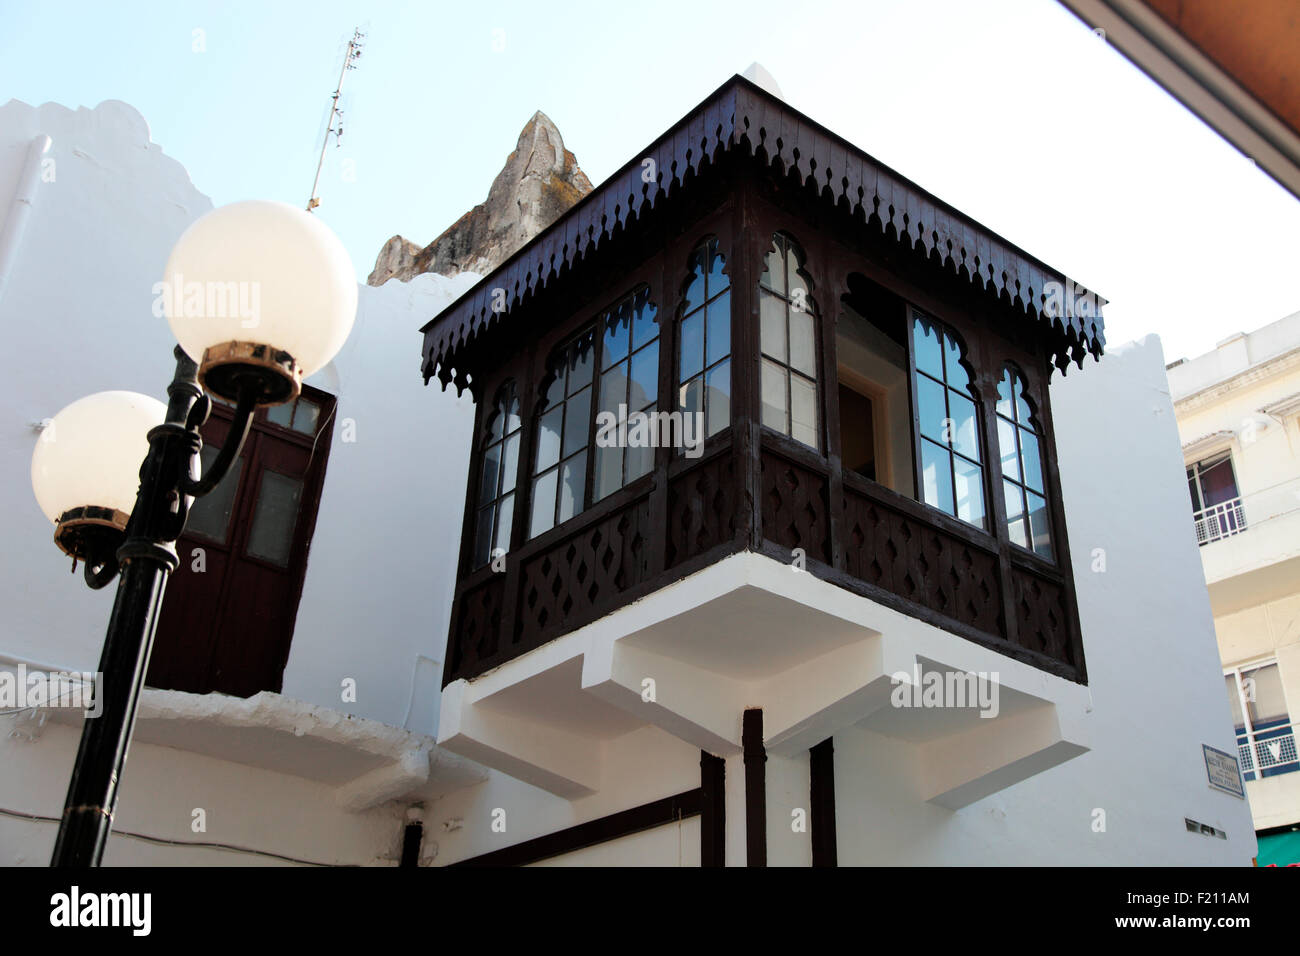 L'architecture turque dans la nouvelle ville de Rhodes Palama Kosto Banque D'Images